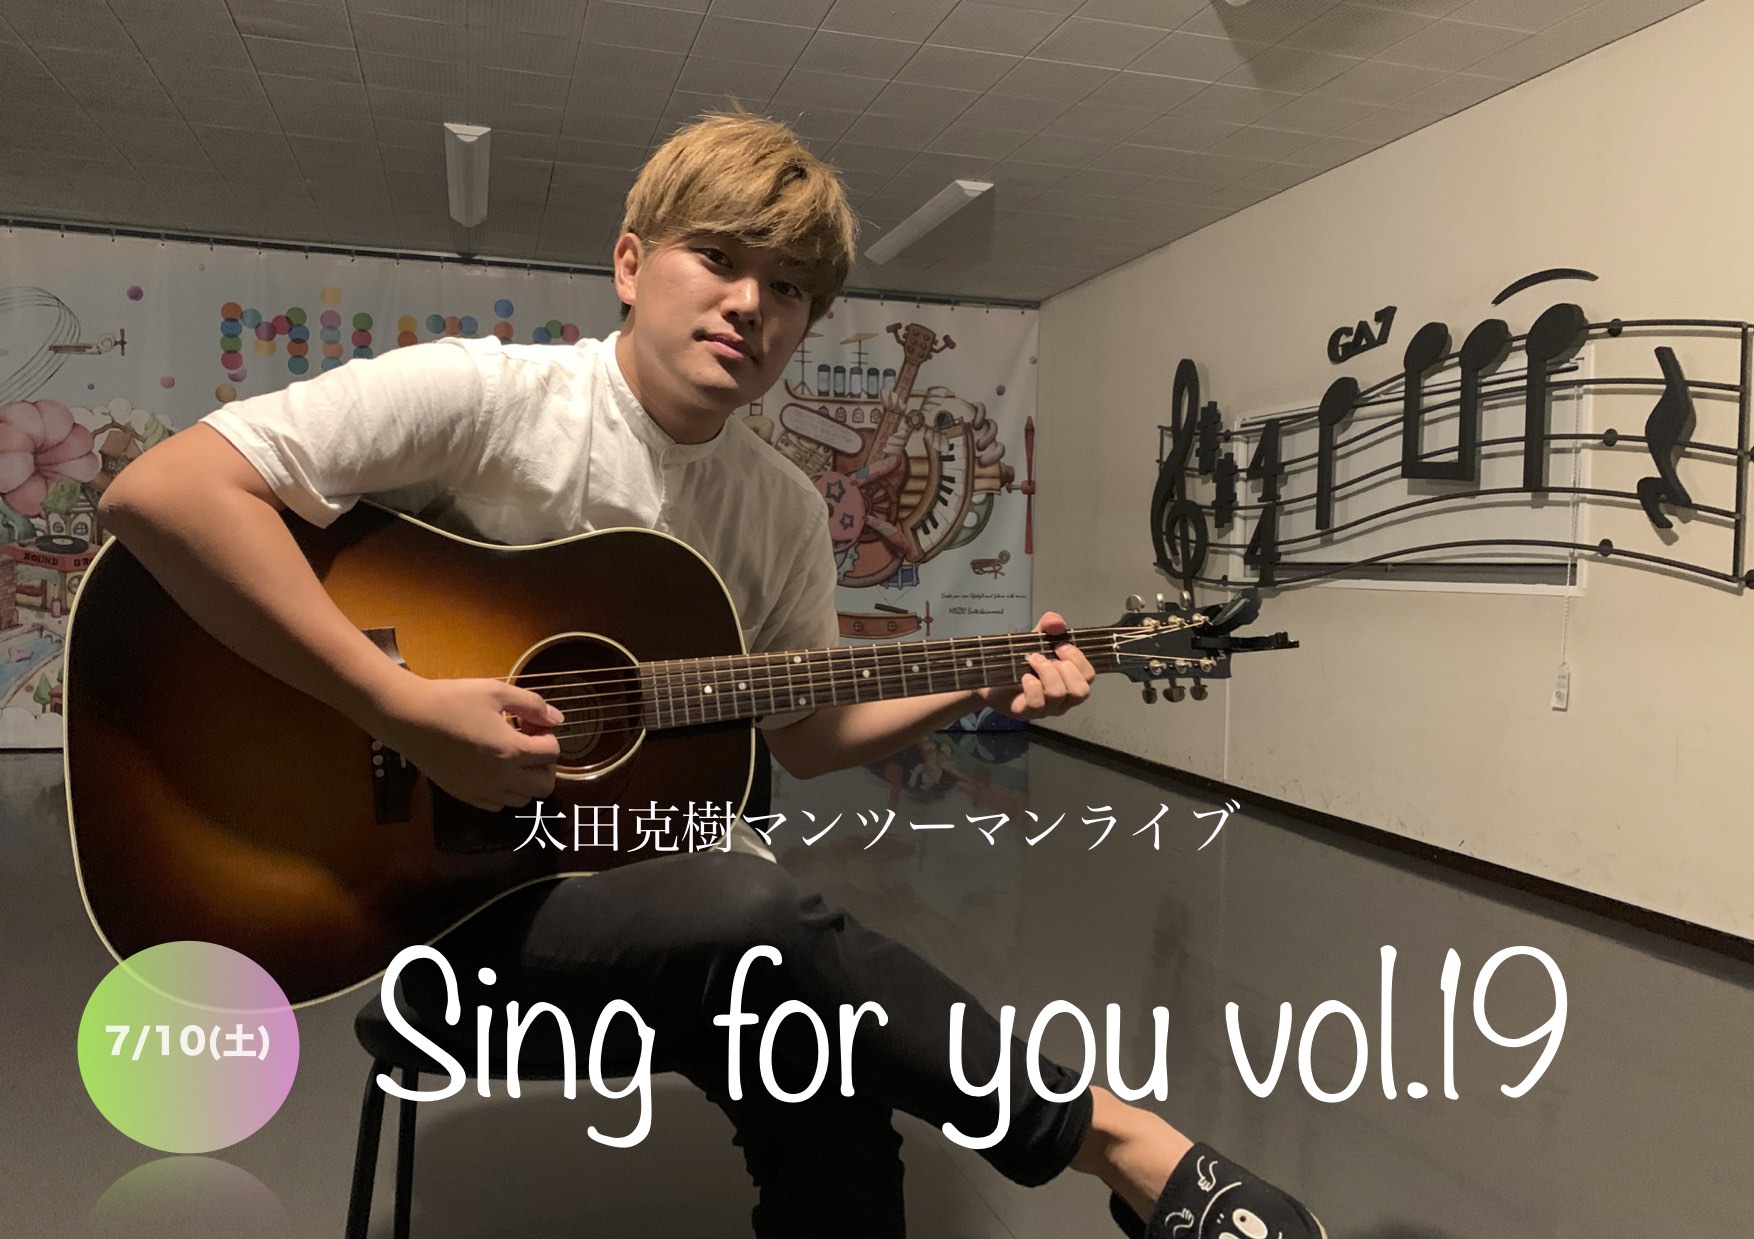 【太田克樹】7/10 (土)マンツーマンライブ「Sing for you vol.19」